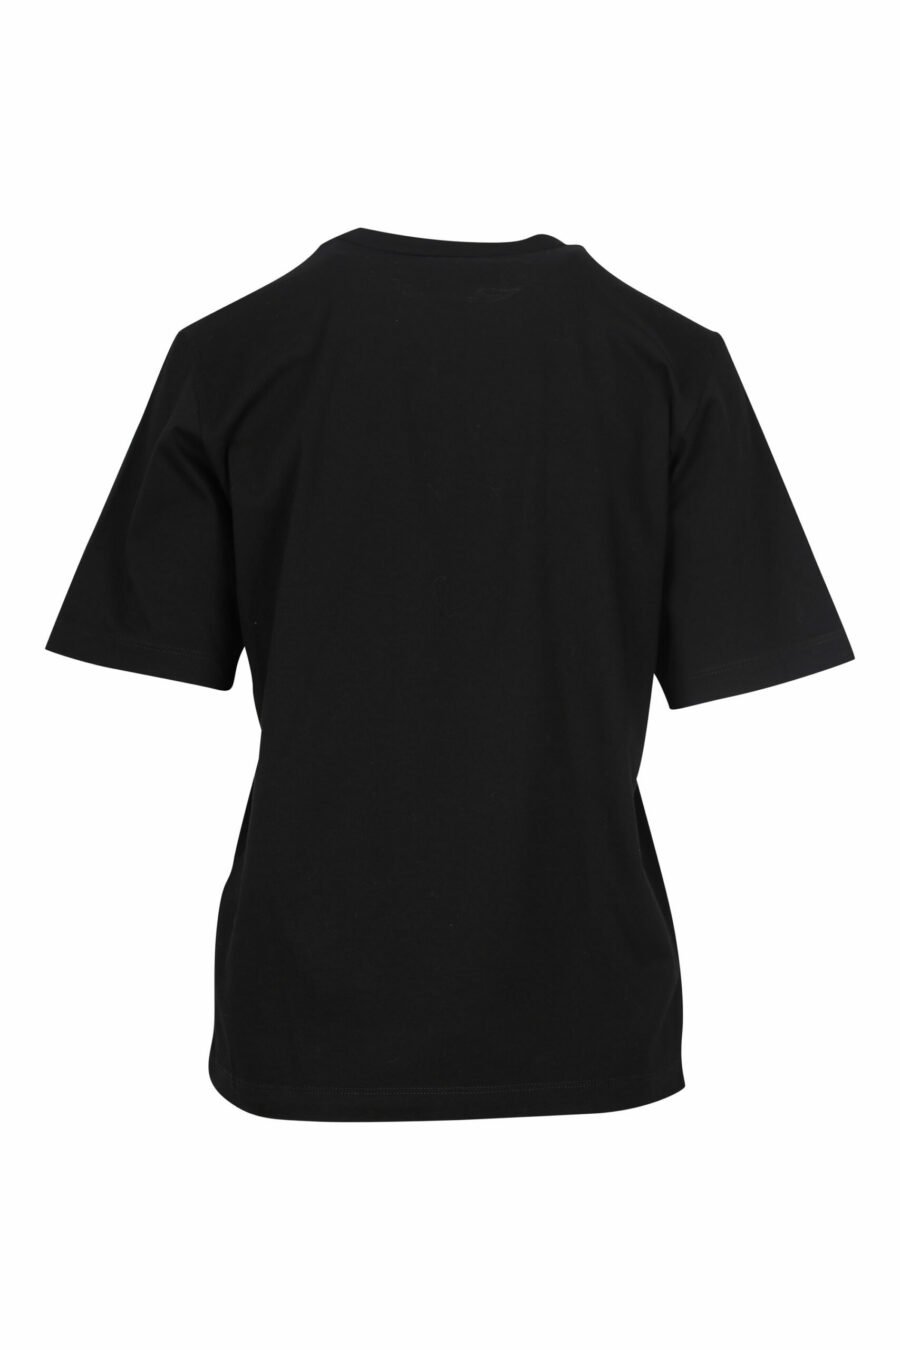 Schwarzes T-Shirt mit "icon pixeled" Logo - 8054148006464 1 skaliert